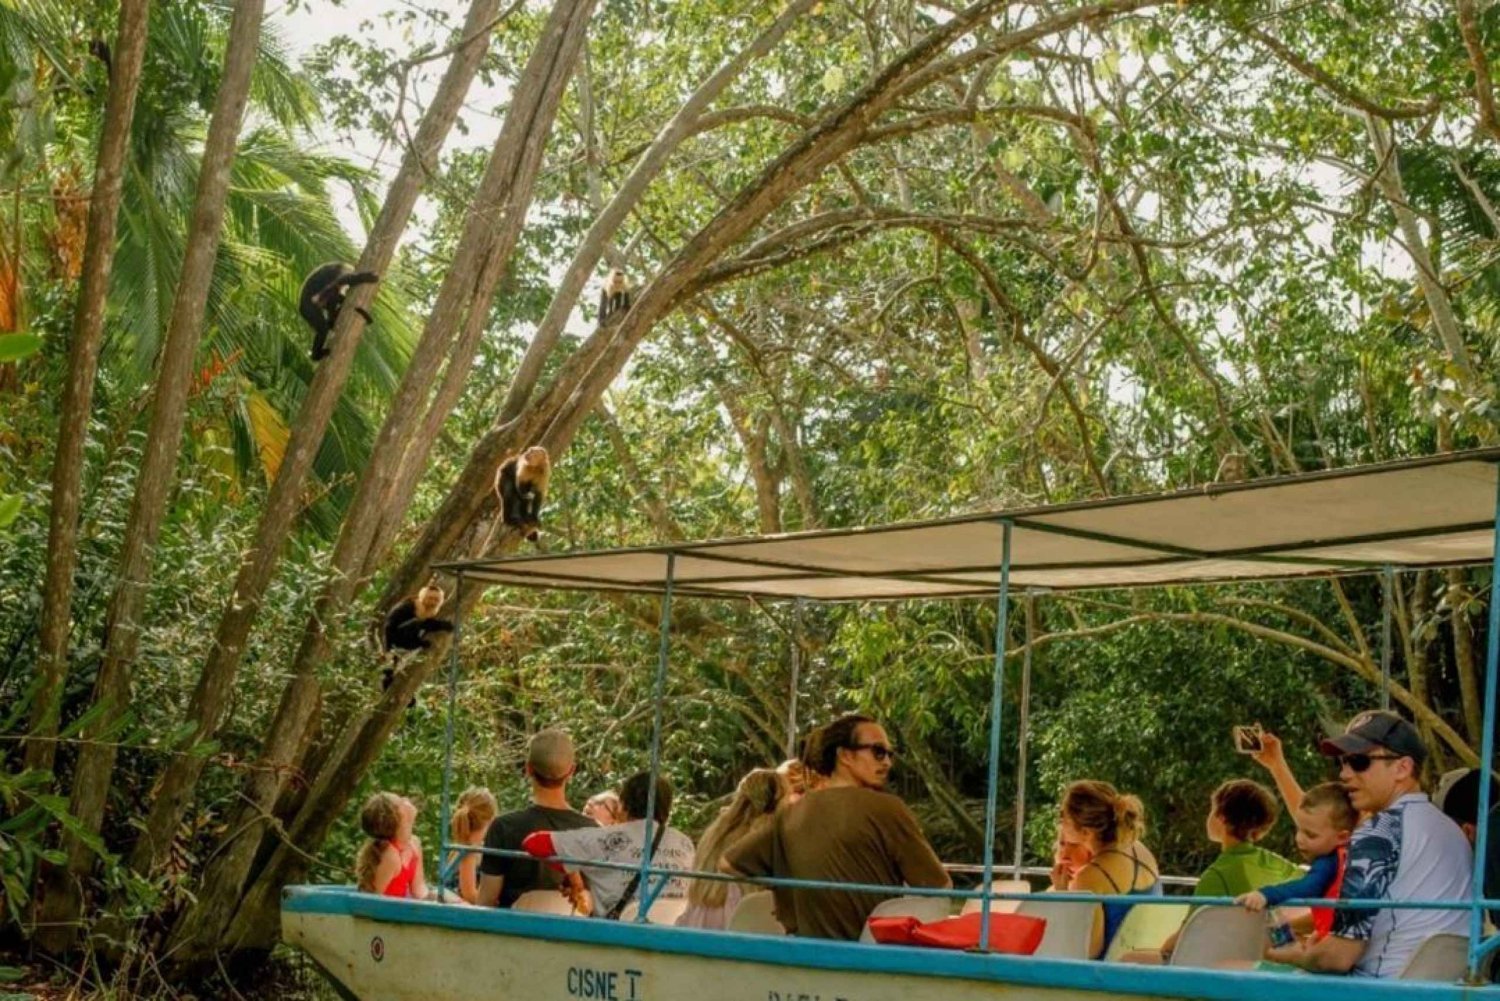 Manuel Antonio: Geführte Bootstour durch die natürlichen Mangroven und Getränke